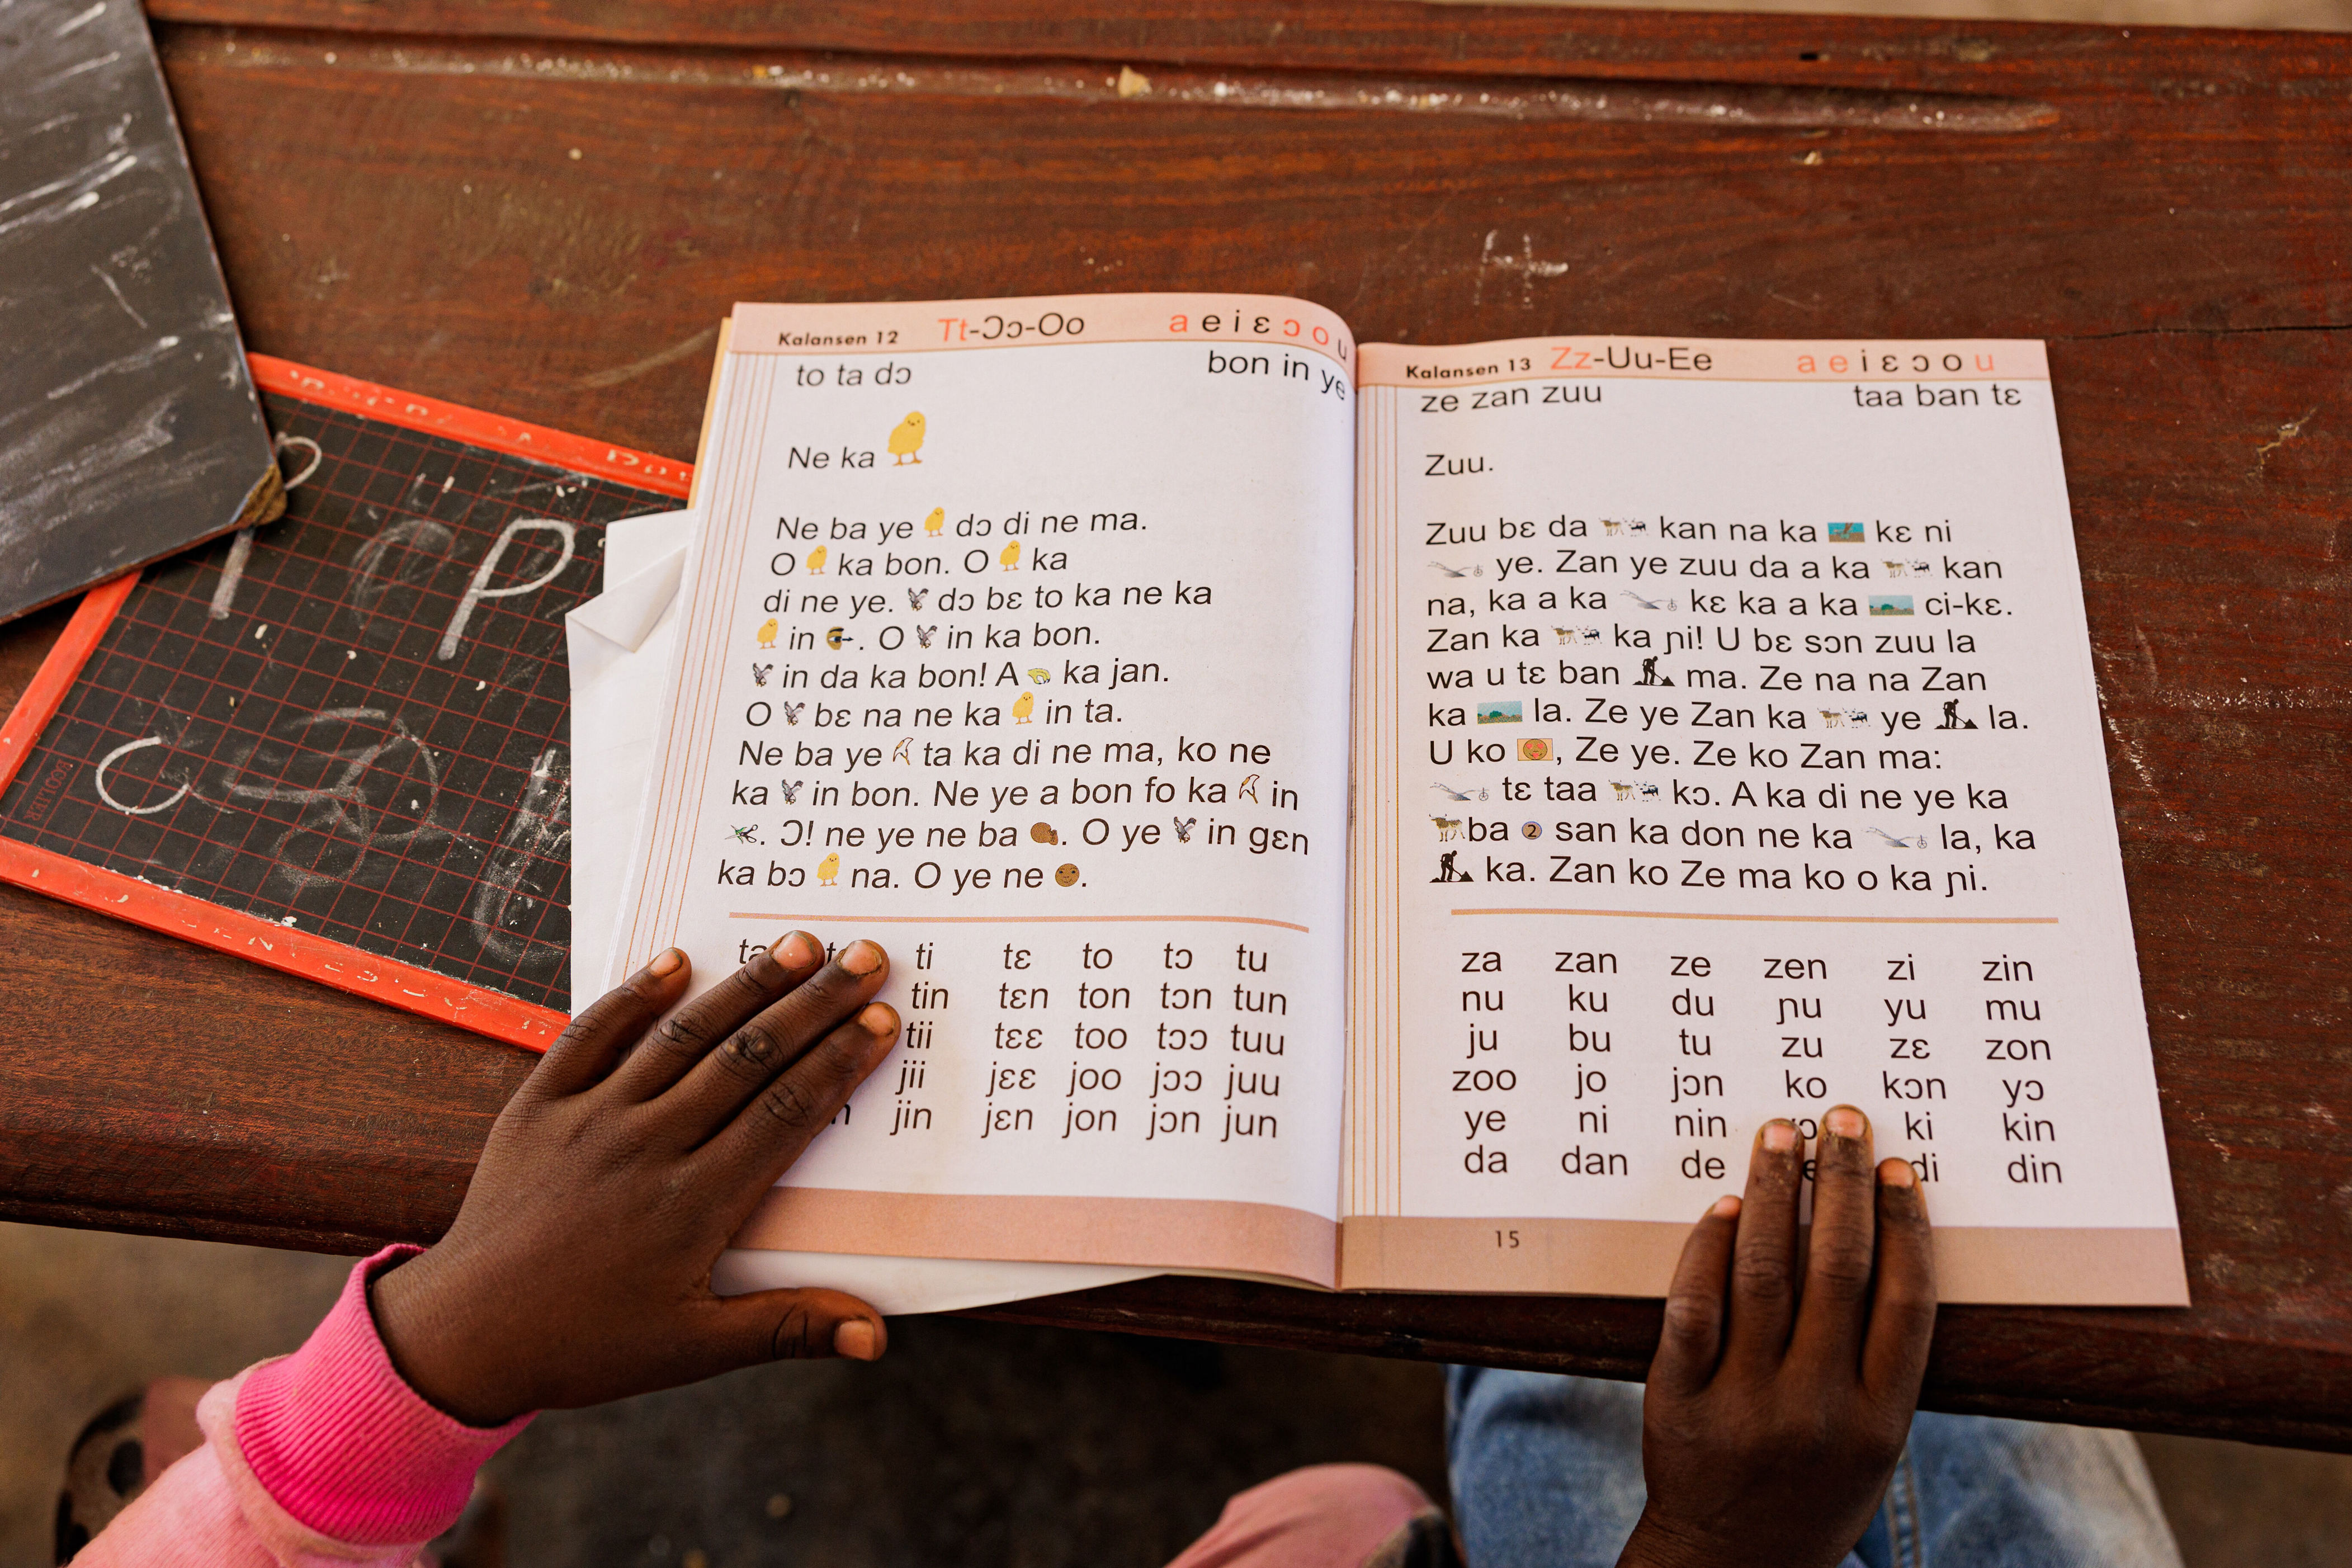 robotsmali, l’initiative malienne qui mise sur l’ia pour apprendre le bambara plutôt que le français à l’école